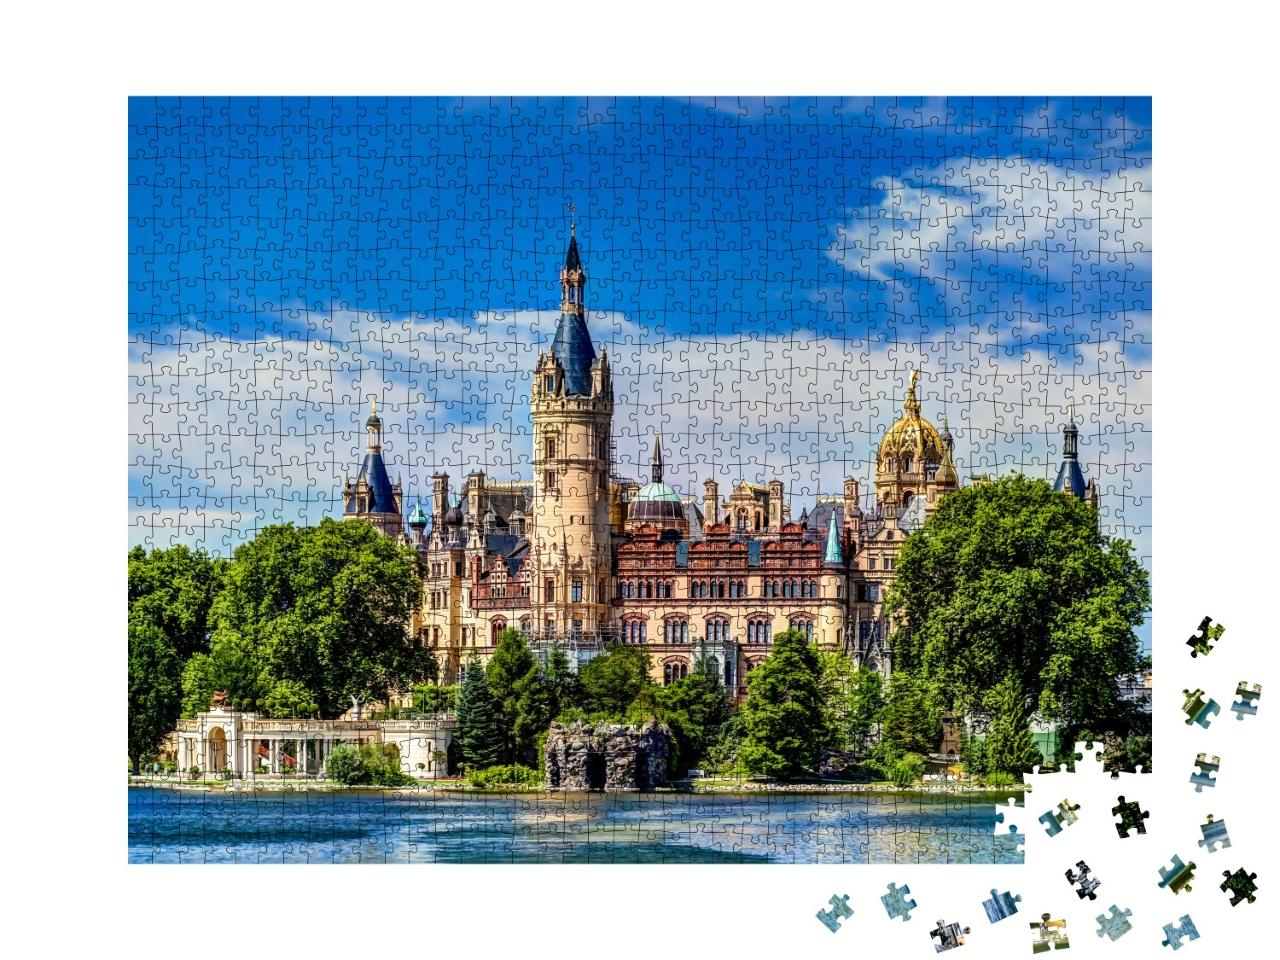 Puzzle 1000 Teile „Das prächtige Schweriner Schloss“